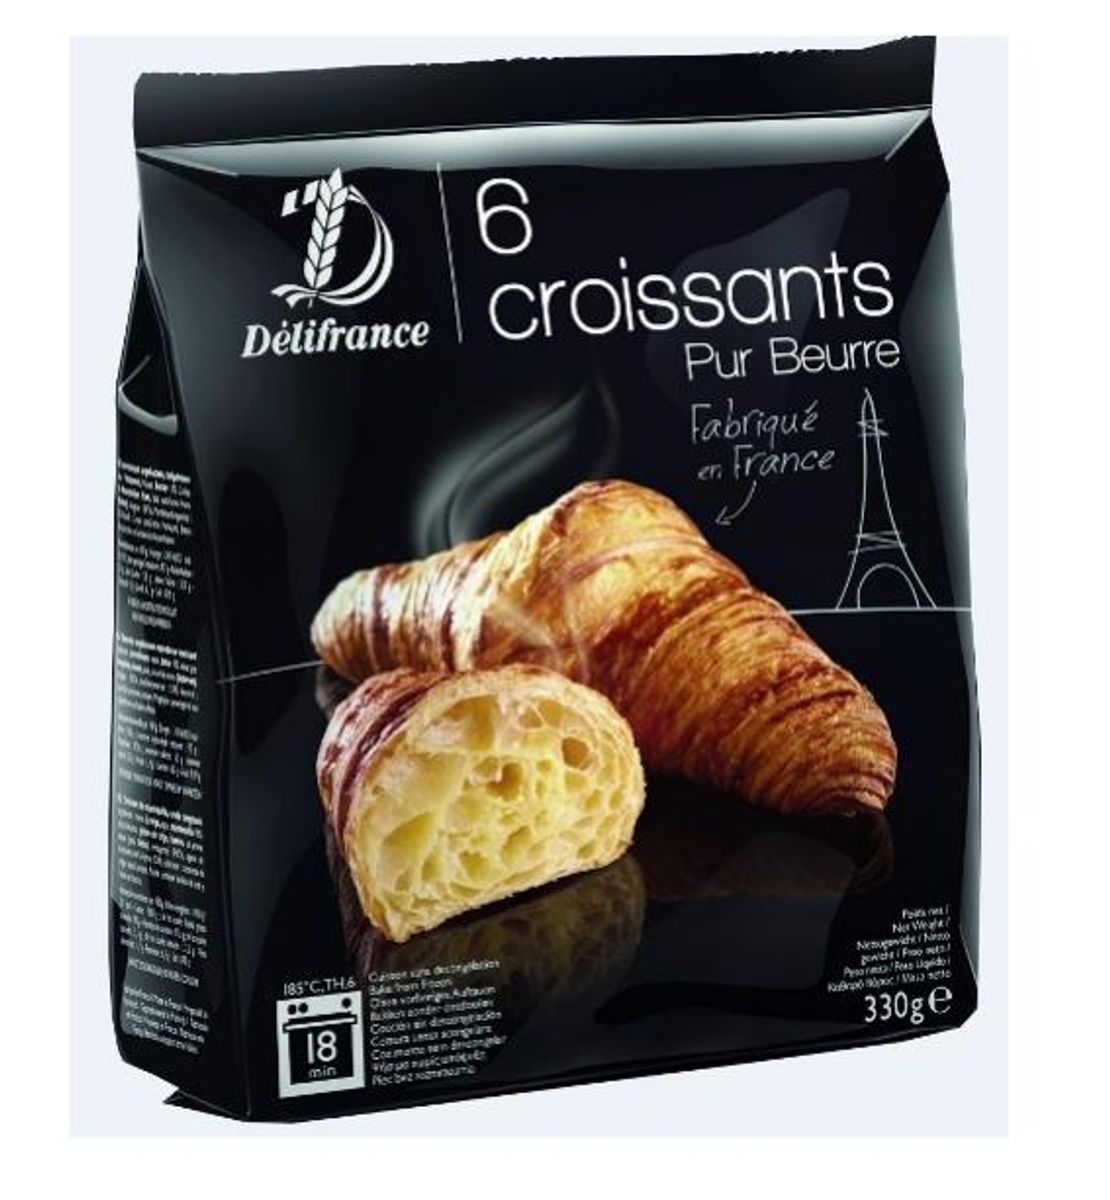 Disse croissanter trækkes tilbage på grund af manglende dansk mærkning. Foto: Geia Foods A/S